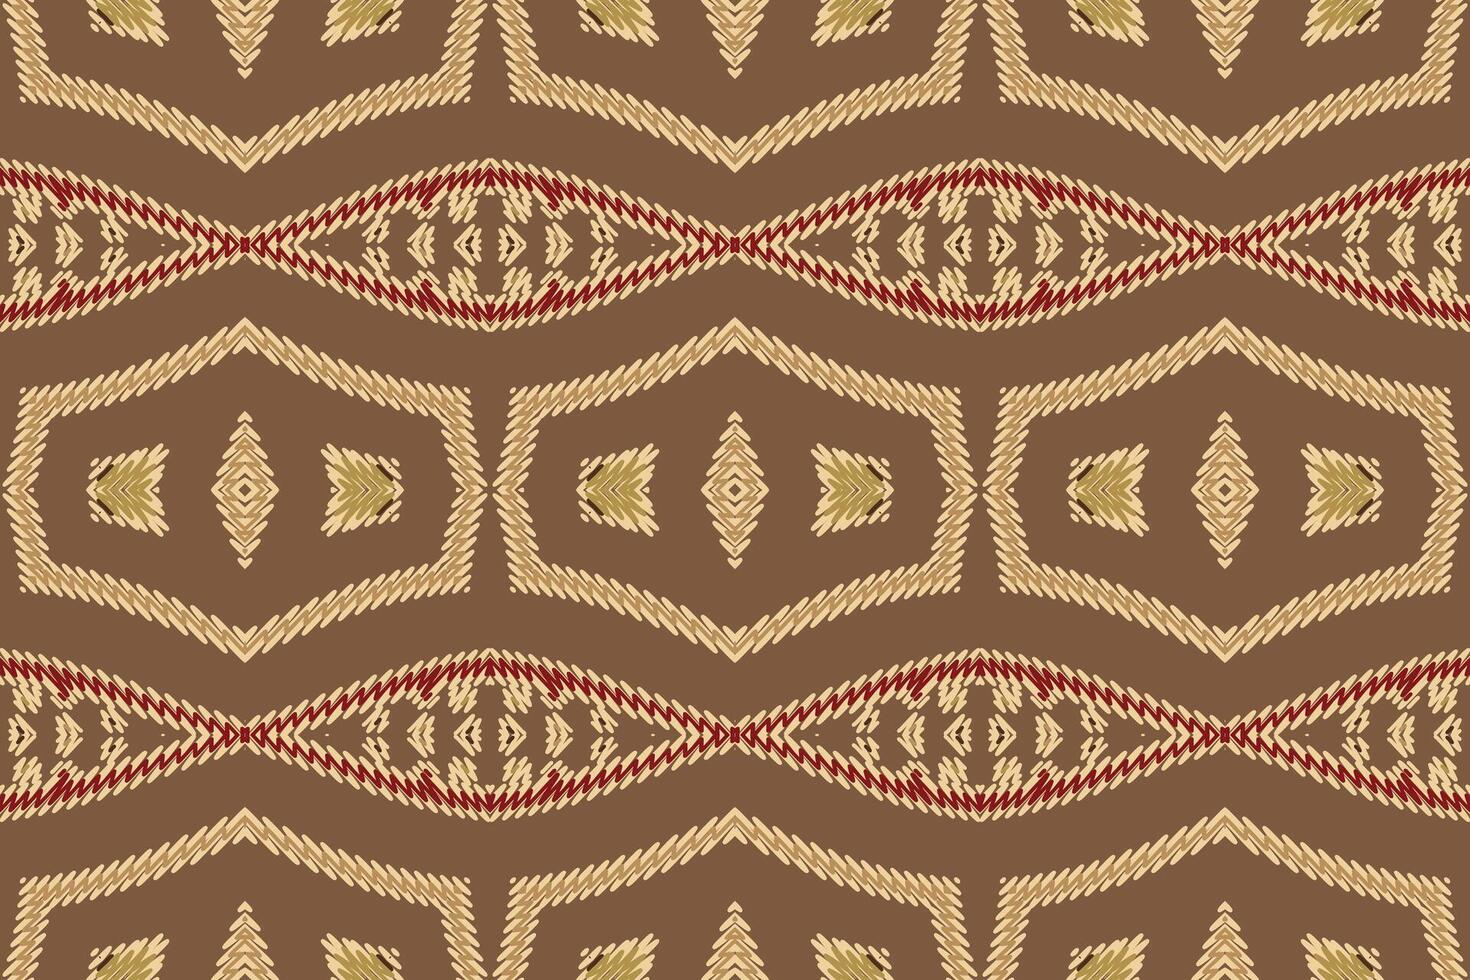 Navajo patroon naadloos Scandinavisch patroon motief borduurwerk, ikat borduurwerk ontwerp voor afdrukken jacquard Slavisch patroon folklore patroon kente arabesk vector